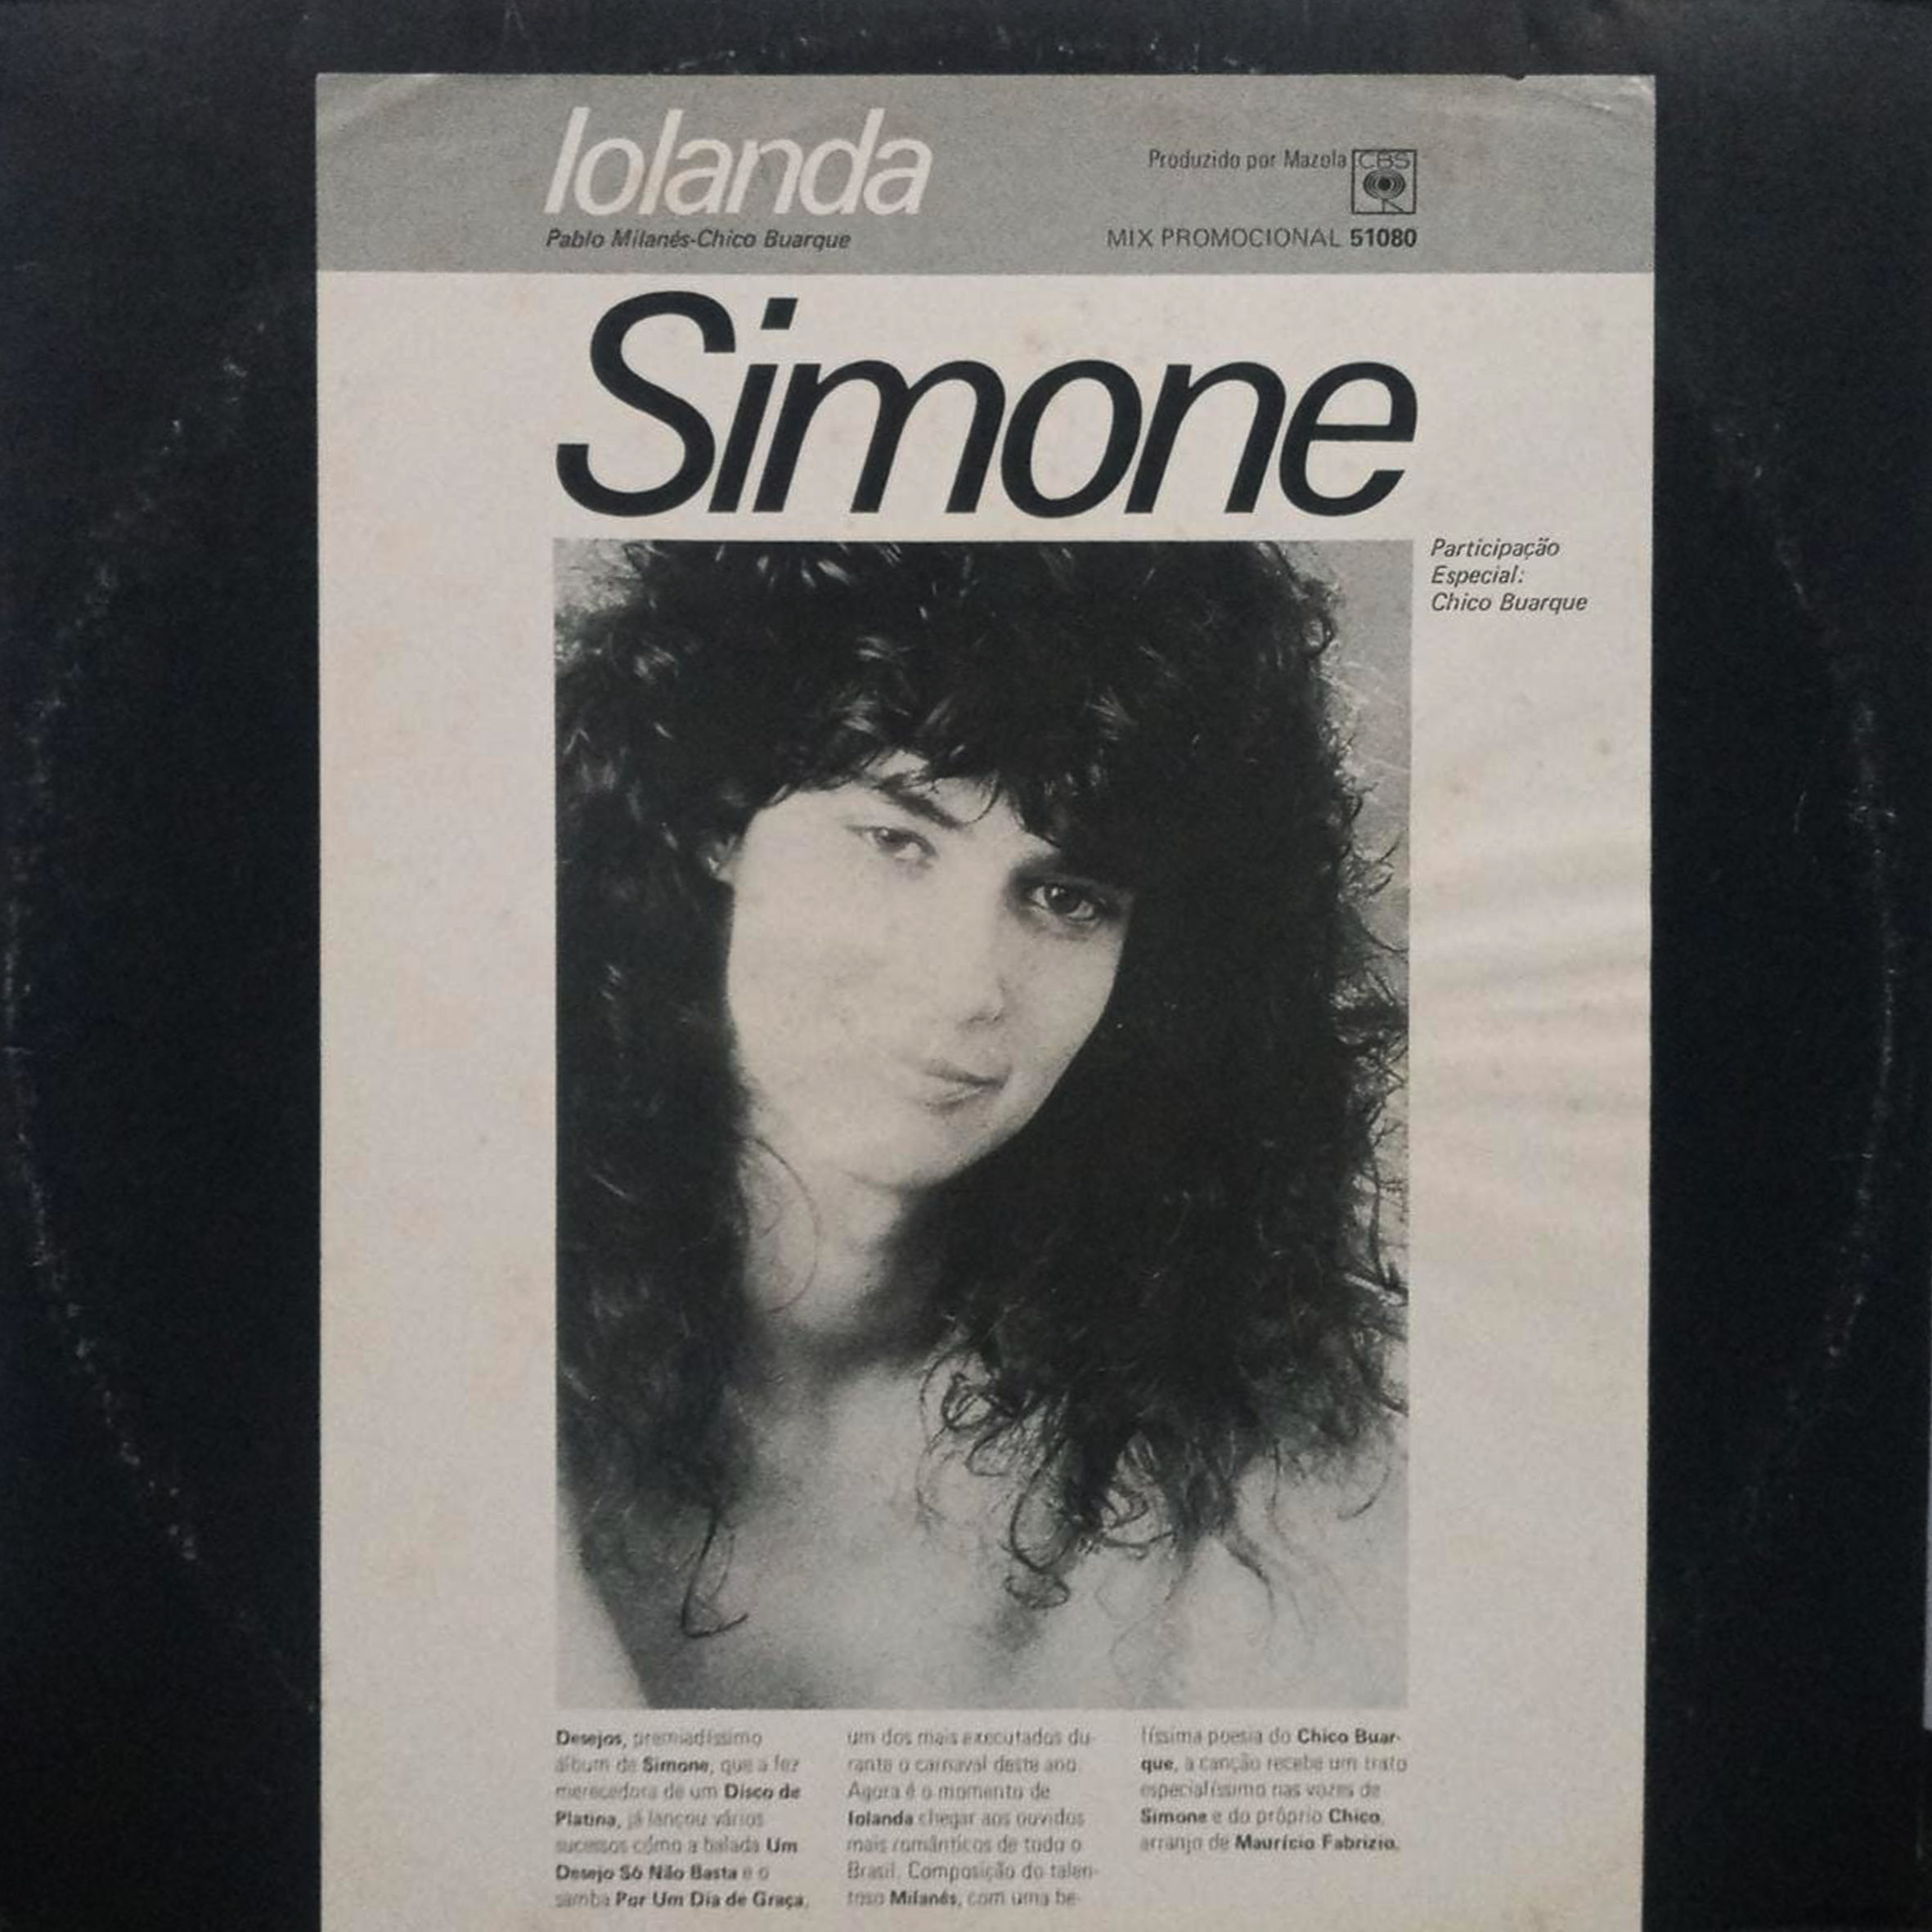 Vinil - Simone - Iolanda